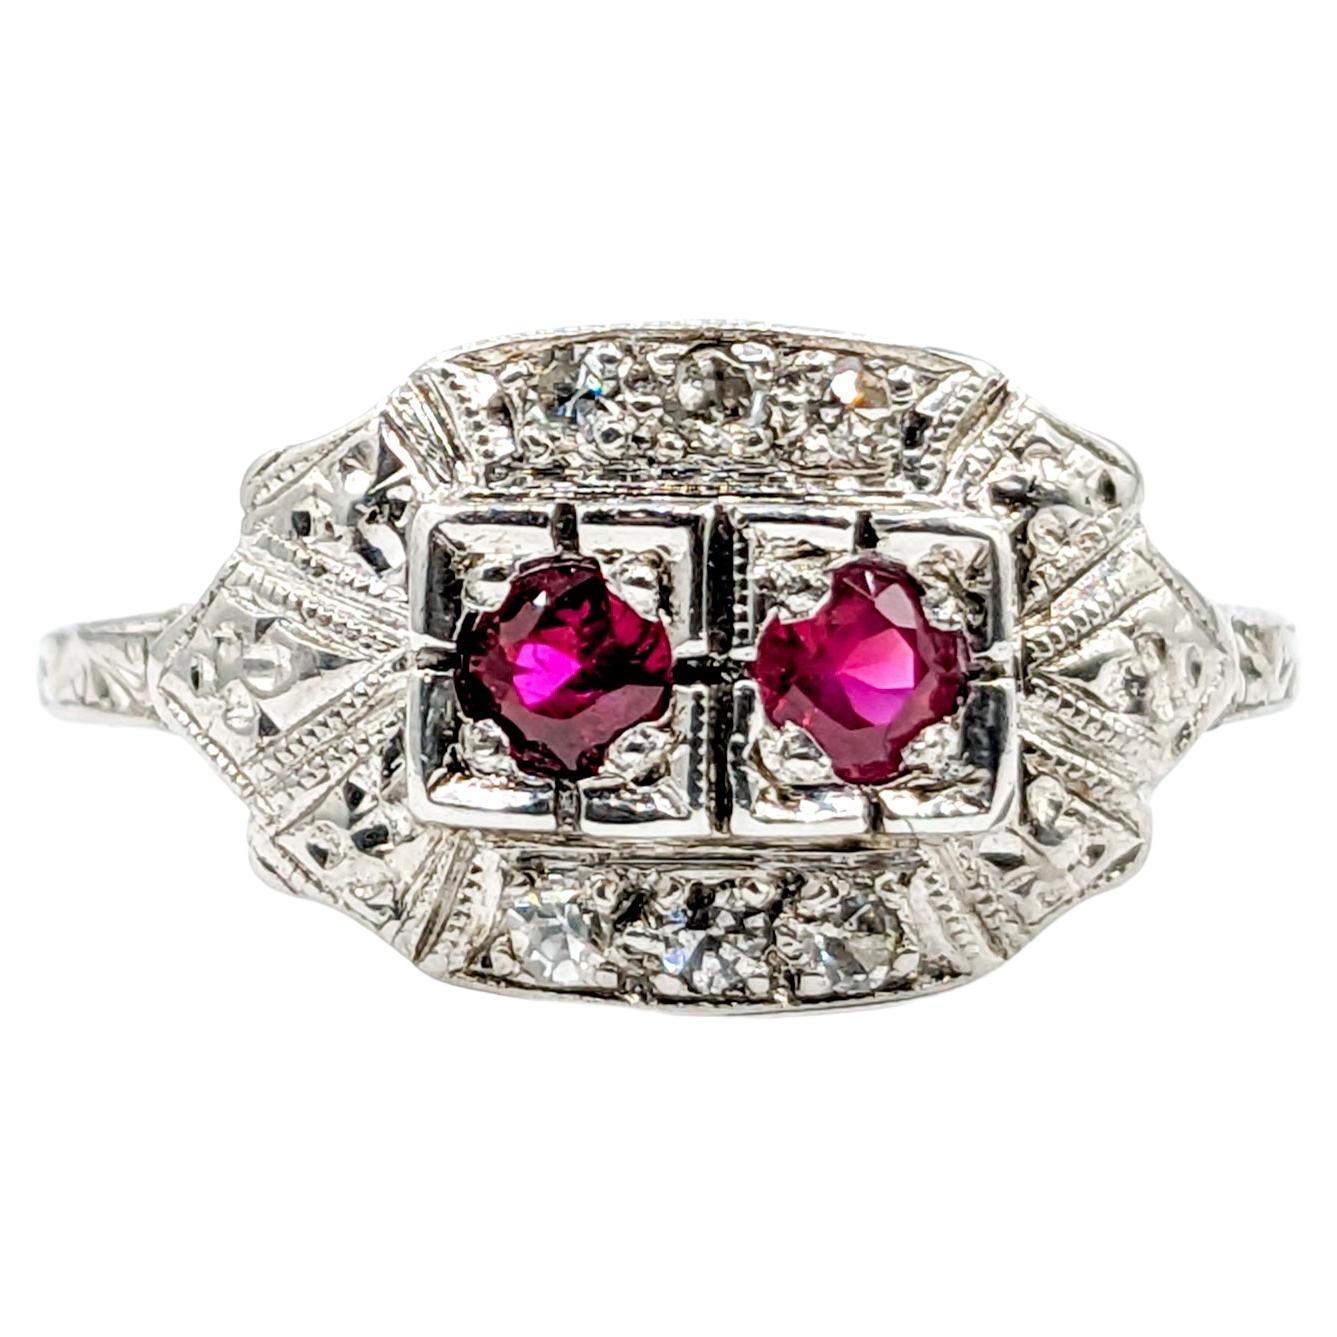 Antique Ruby & Diamond Ring in Platinum